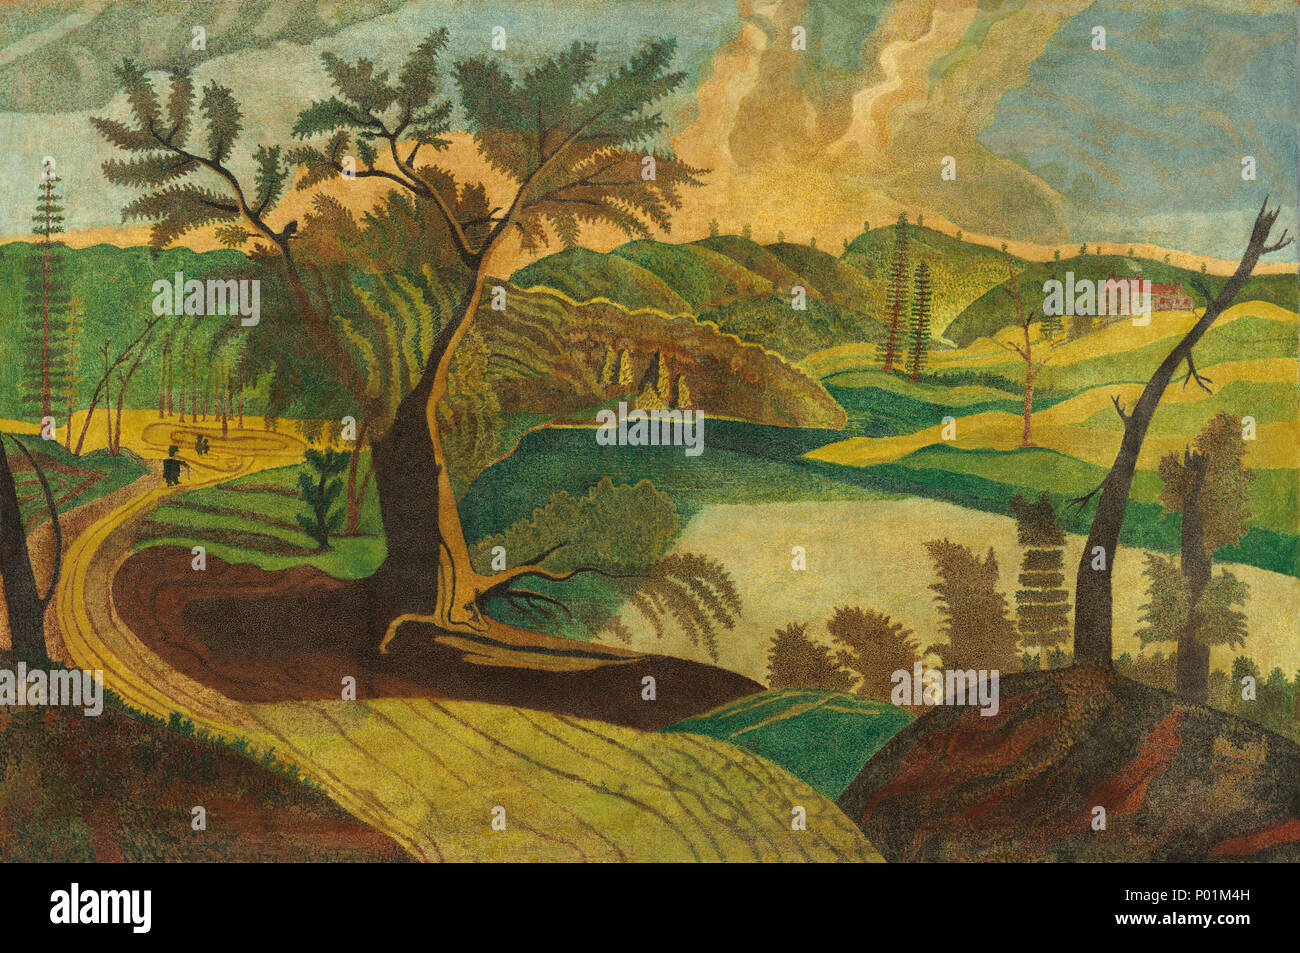 Malerei; Öl auf Leinwand; gesamt: 70,5 x 105,4 cm (27 3/4 x 41 1/2 in.) gerahmt: 88,6 x 124,4 x 3,8 cm (34 7/8 x 49 x 1 1/2 in.); 22 stilisierte Landschaft ein 18899 Stockfoto